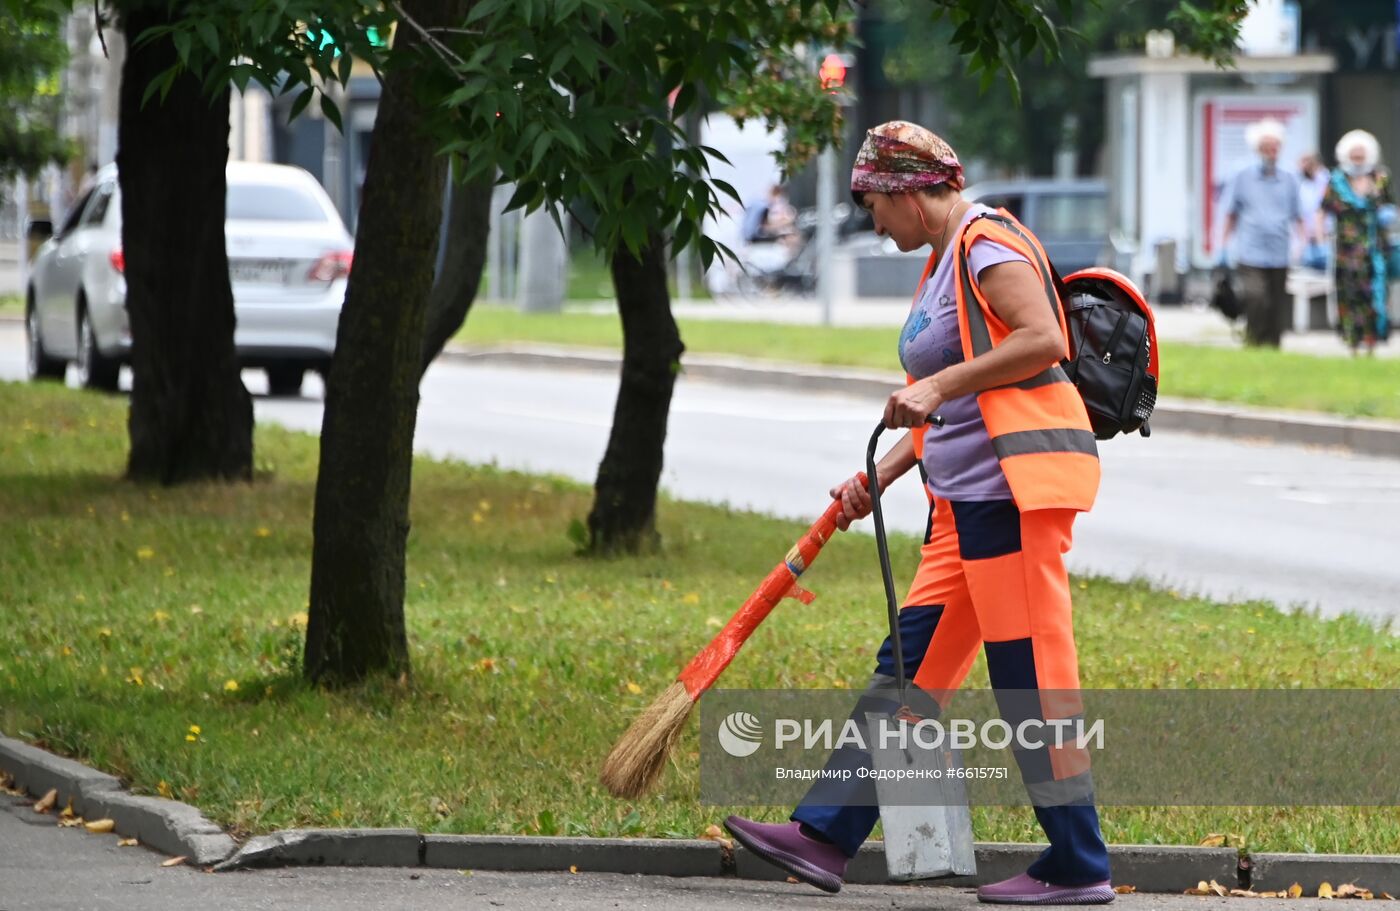 Уборка улиц в Москве